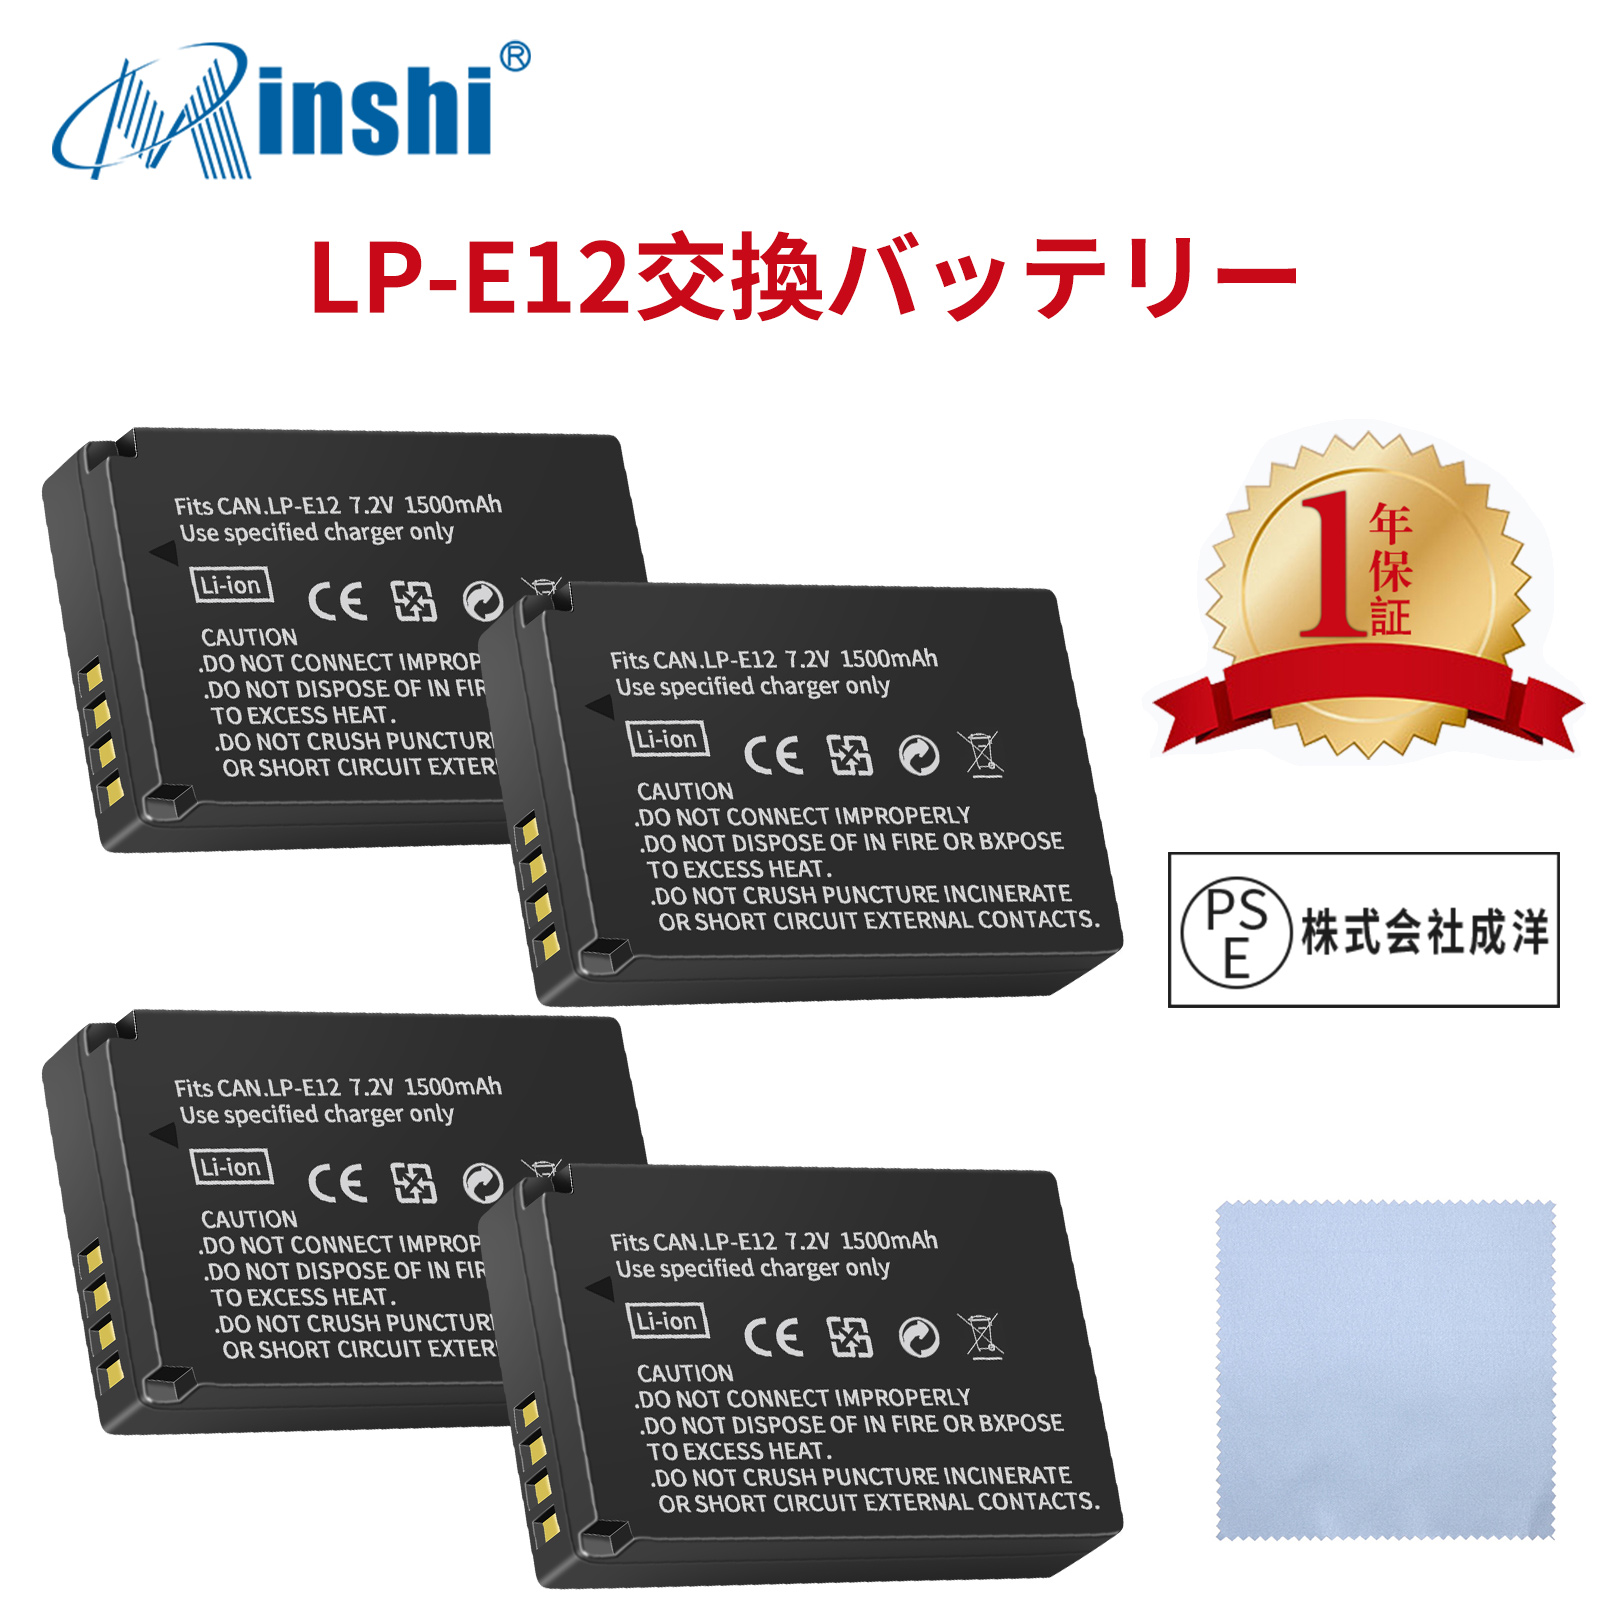 【4個セット&amp;クロス付き】 minshi  EOS M、EOS M2  LP-E12  LP-E12 対応 互換バッテリー EOS M M100 M200 Kiss M X7 1500mAh  高品質交換用バッテリー